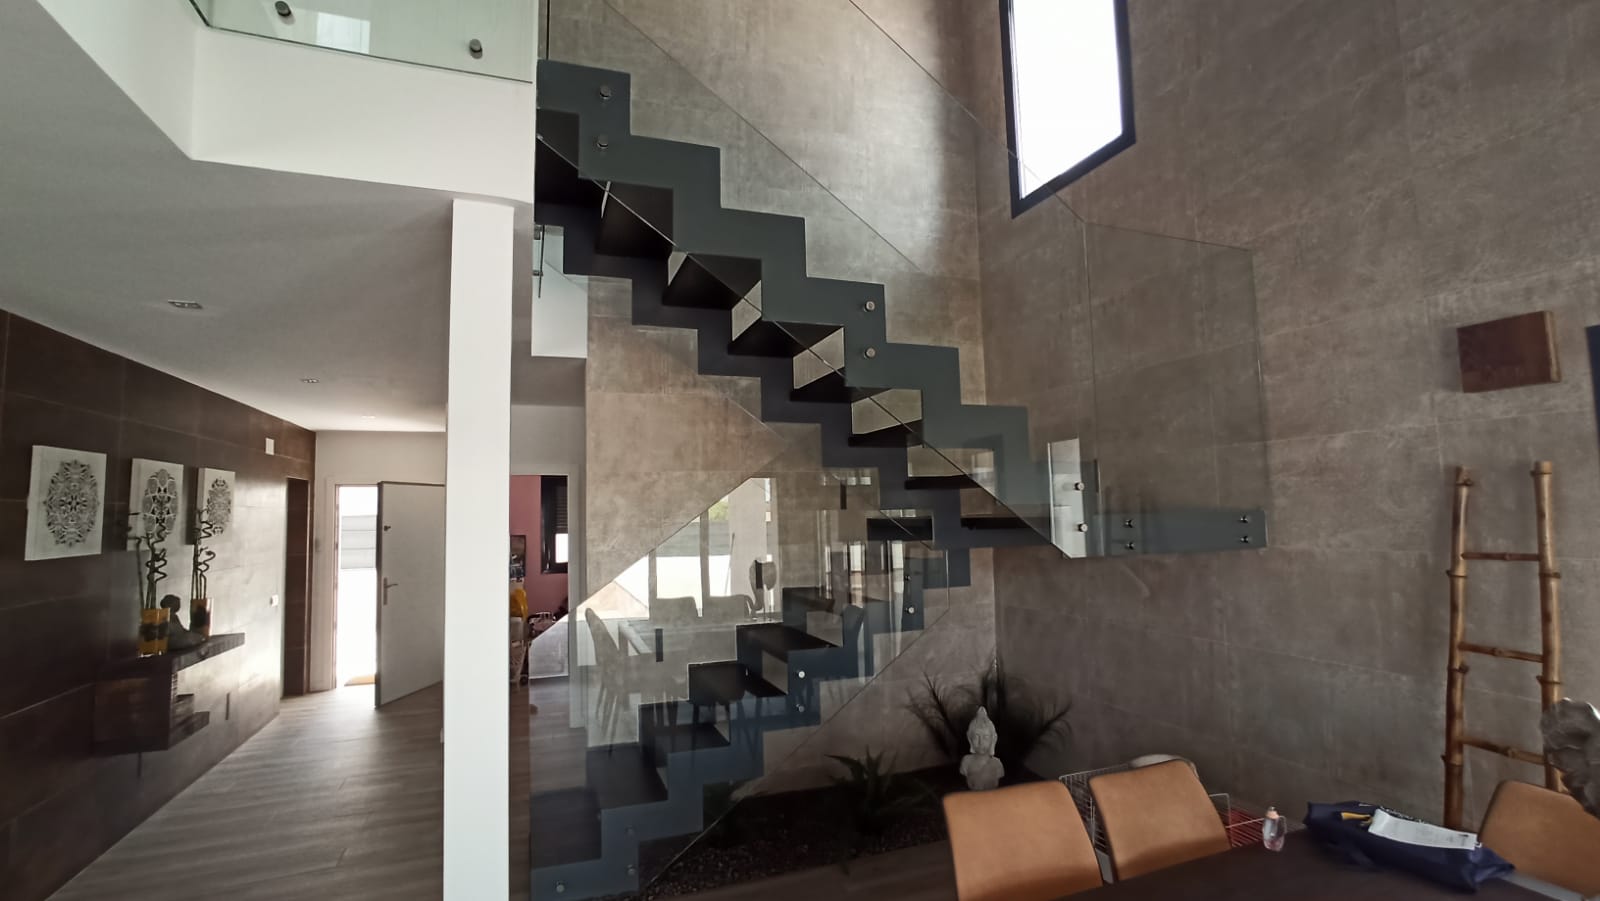 Escalera de hierro diseño moderno